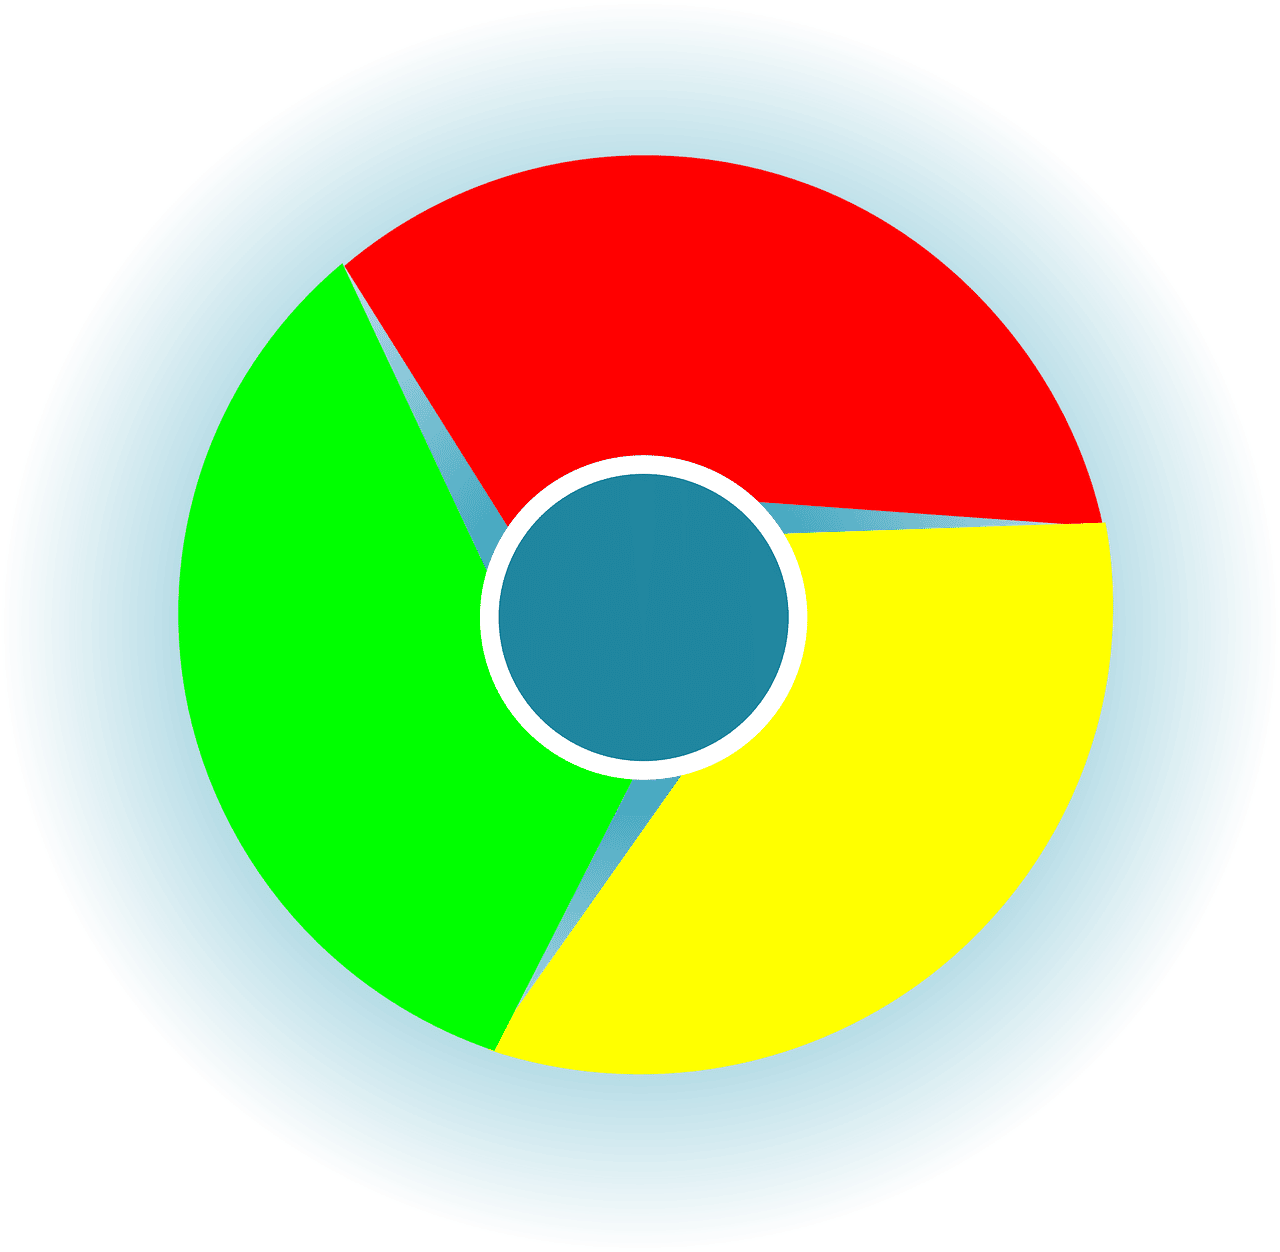 5 raisons de se réjouir de l’arrivée de Google Lens sur Chrome